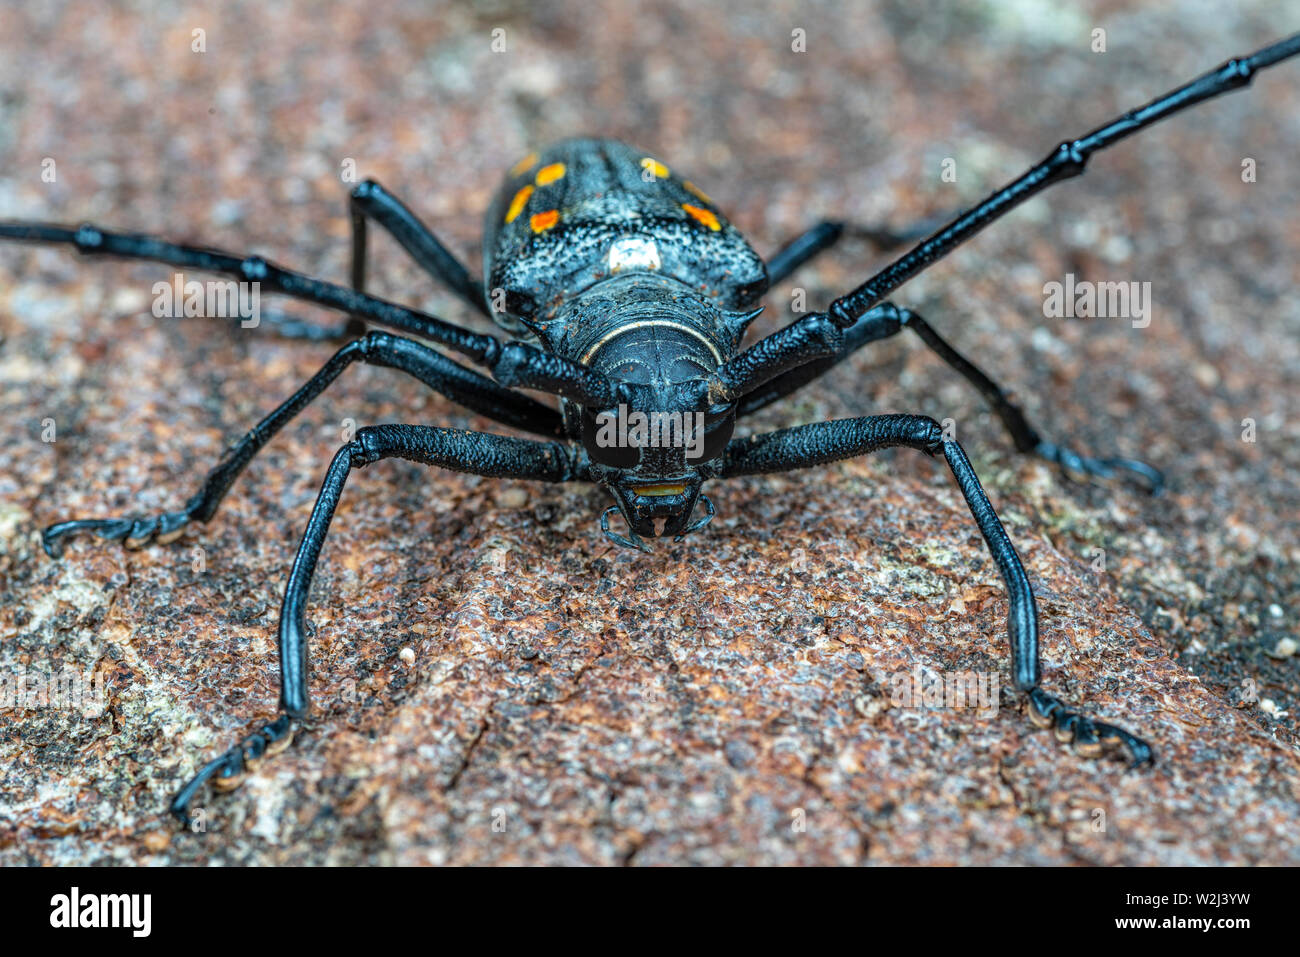 Batocera frenchi, a large longicorn beetle with spectacular orange markings Stock Photo